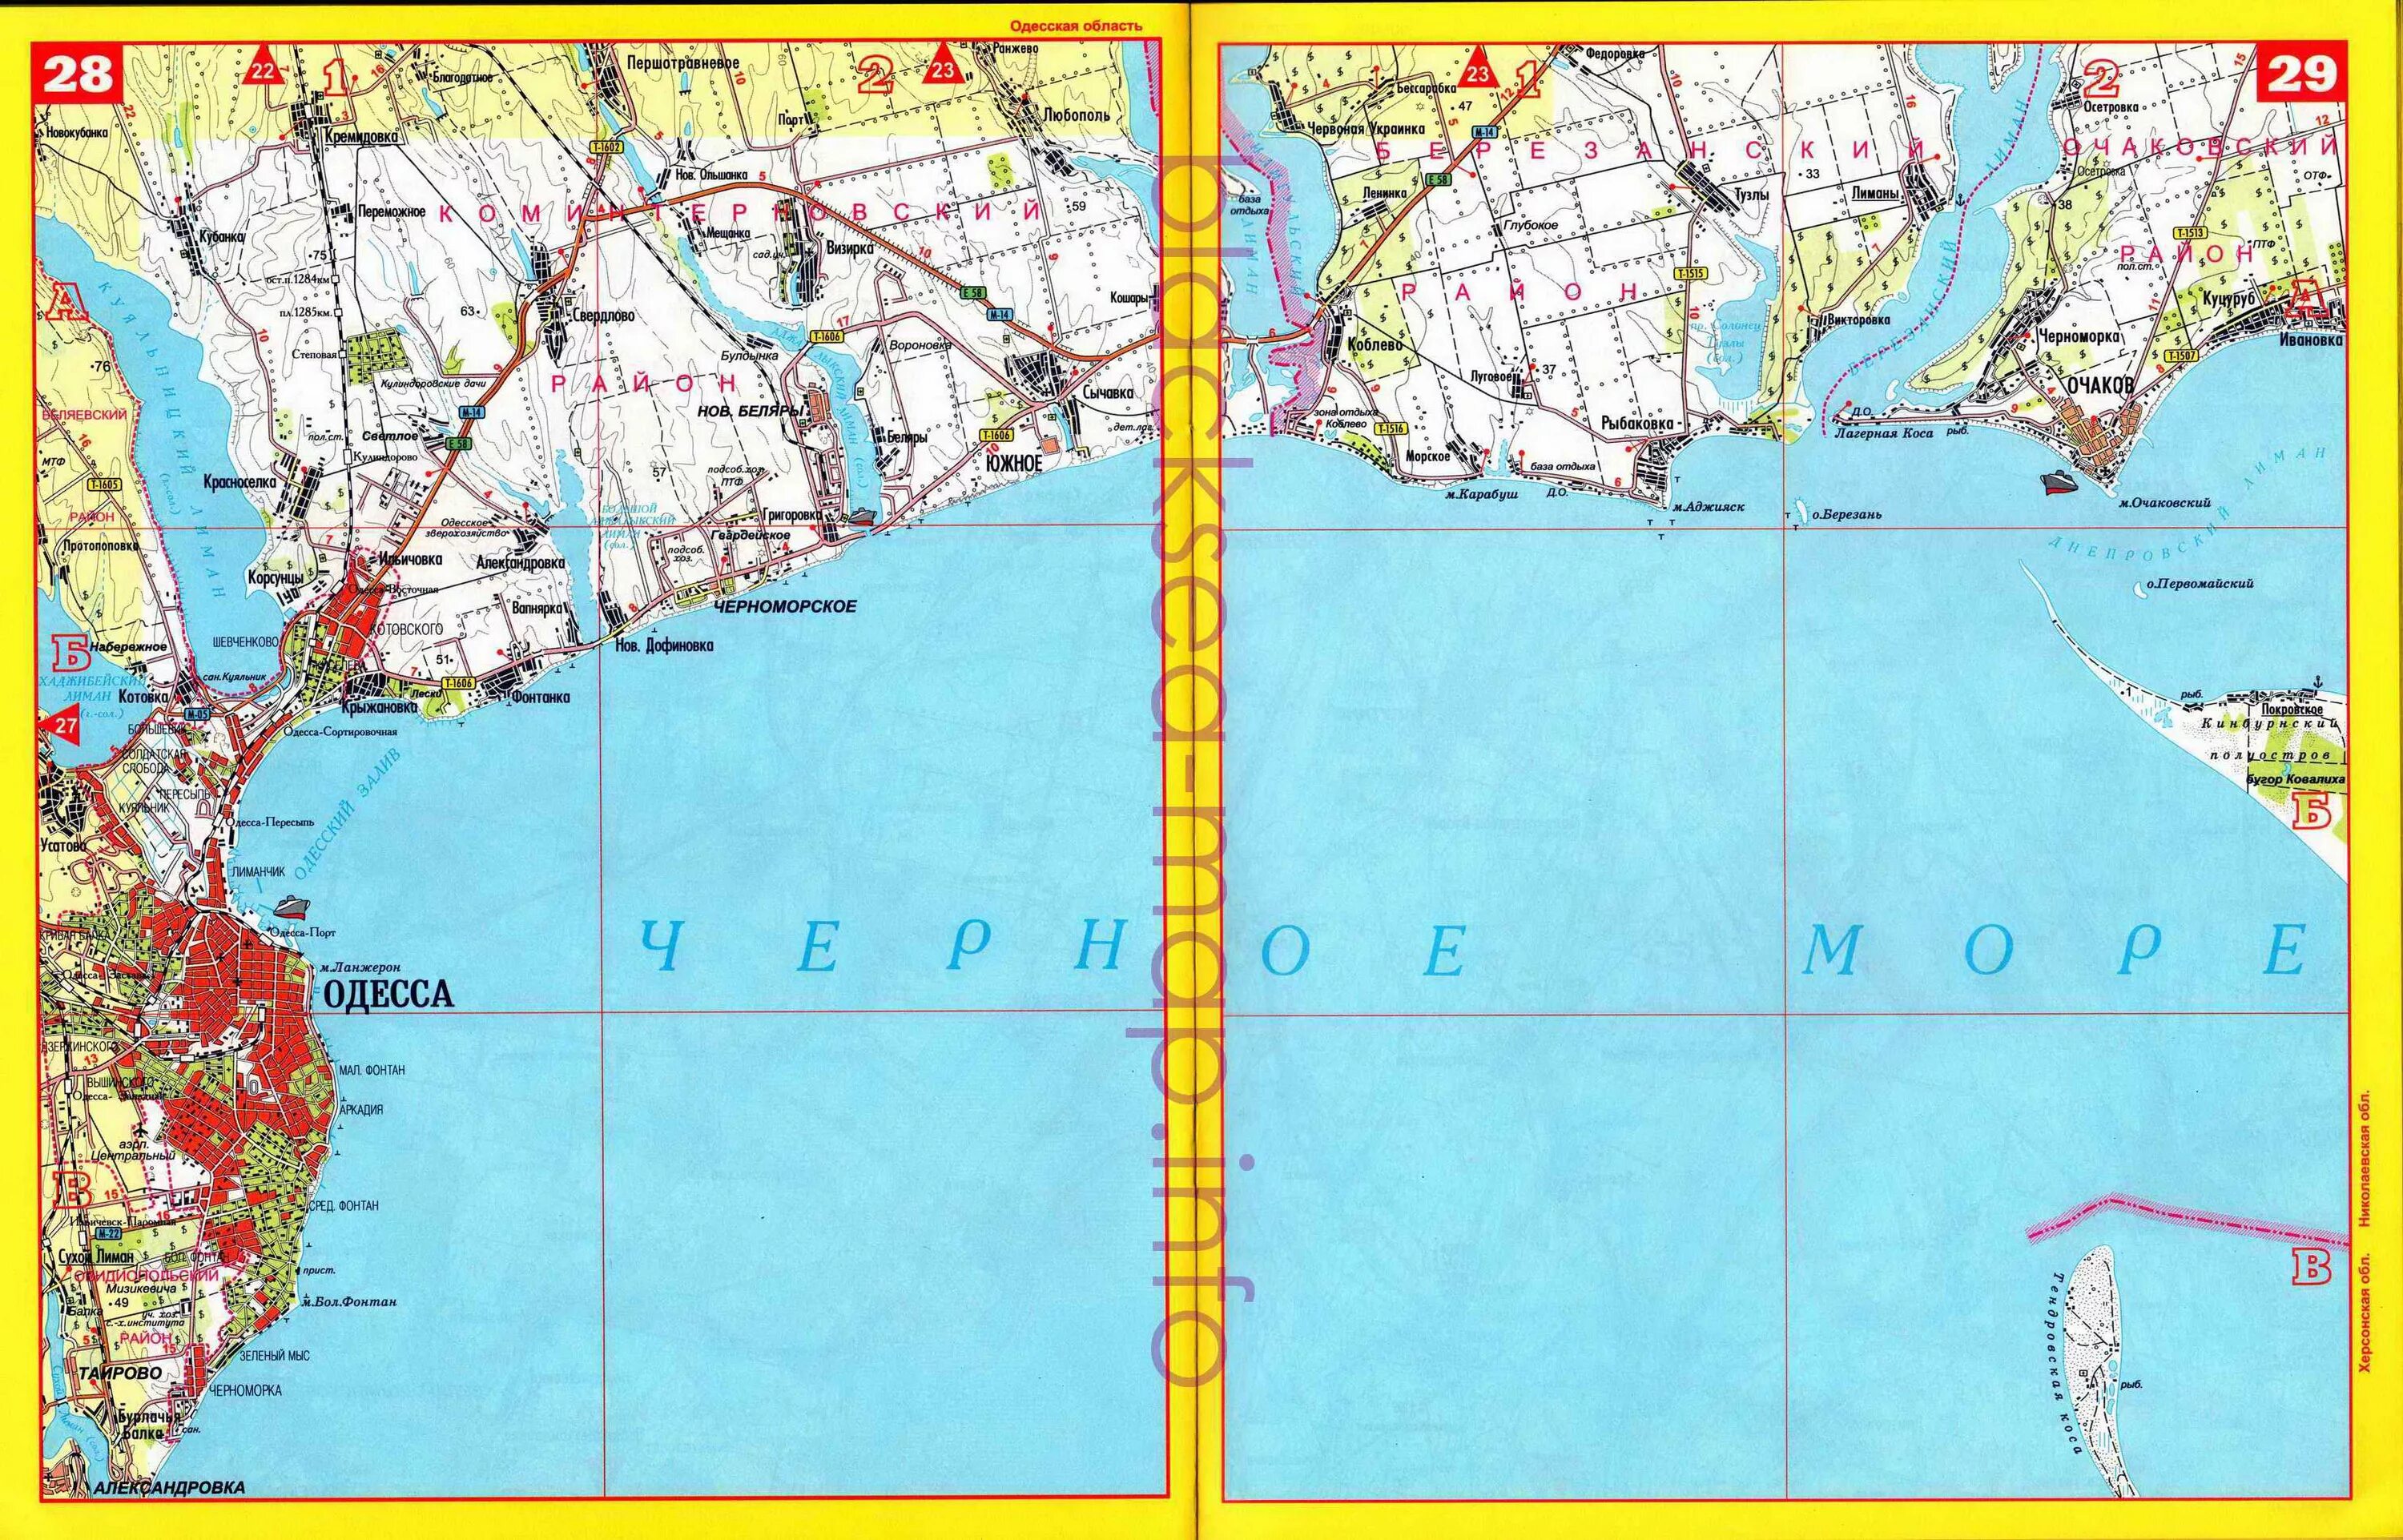 Карта Черноморского побережья Одес. Картапобережбя Одессы. Одесса карта побережья. Одесса на карте черного моря.